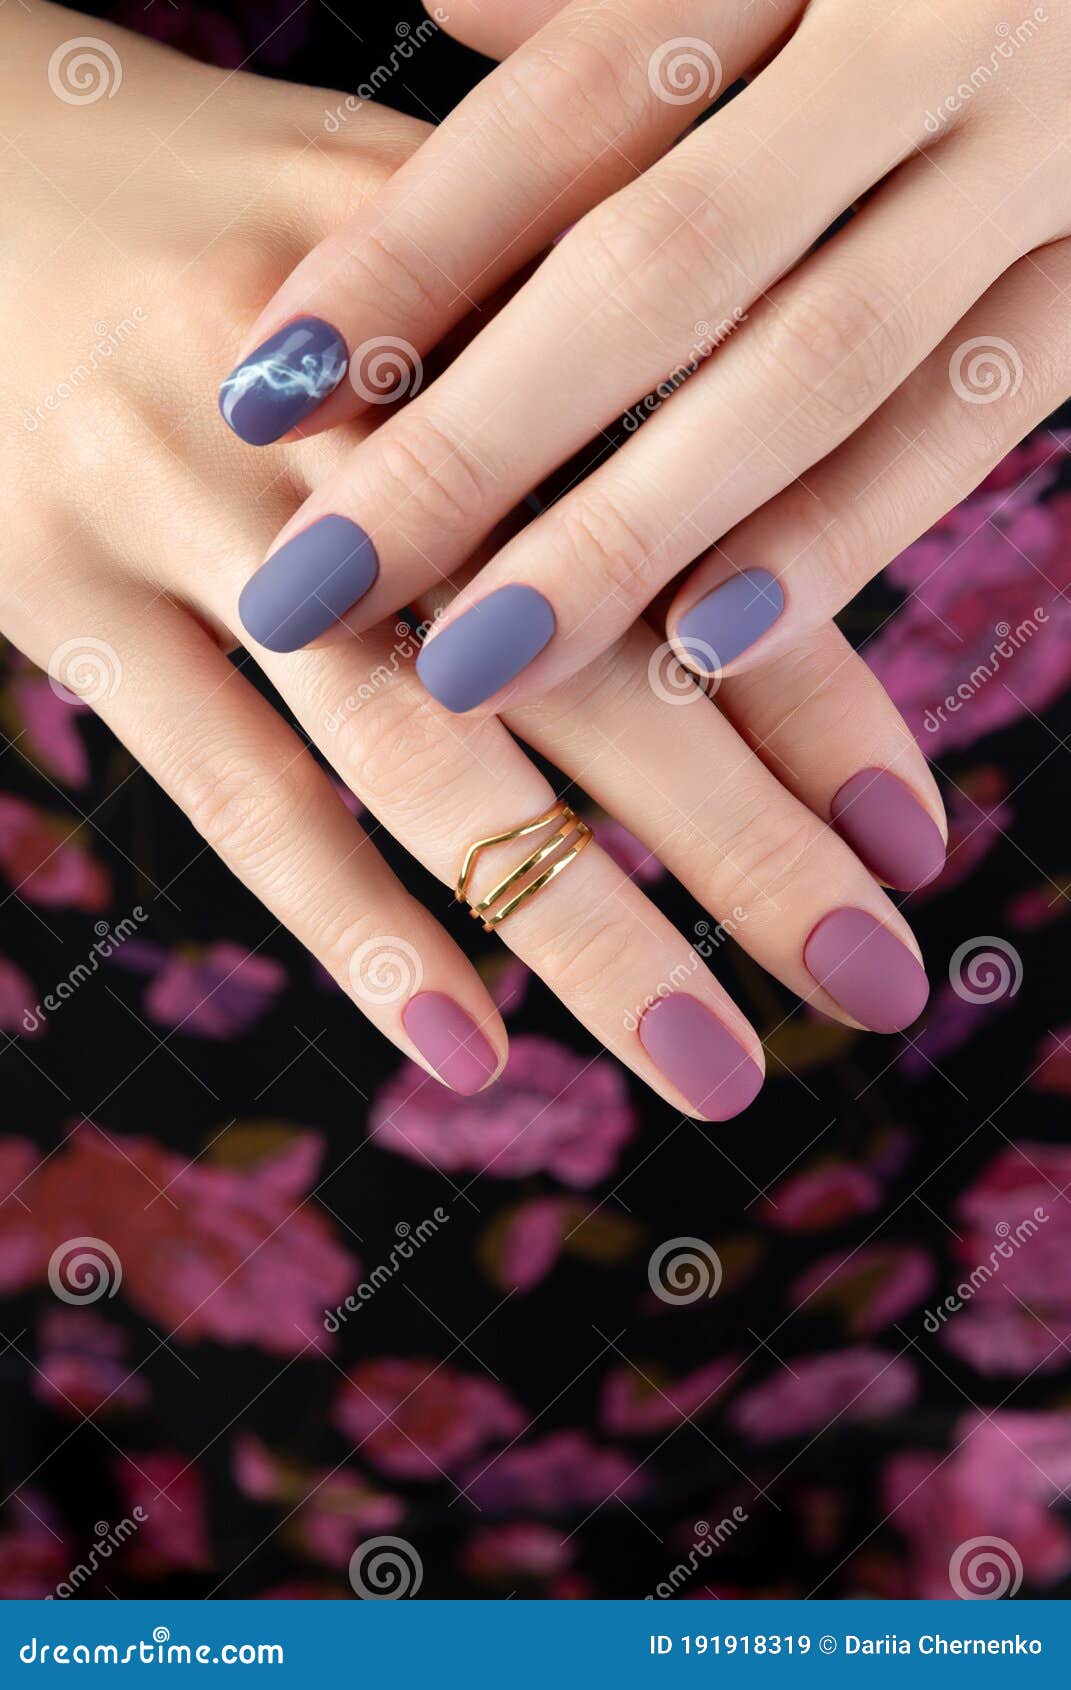 Amethyst | Long Royal Purple Nails